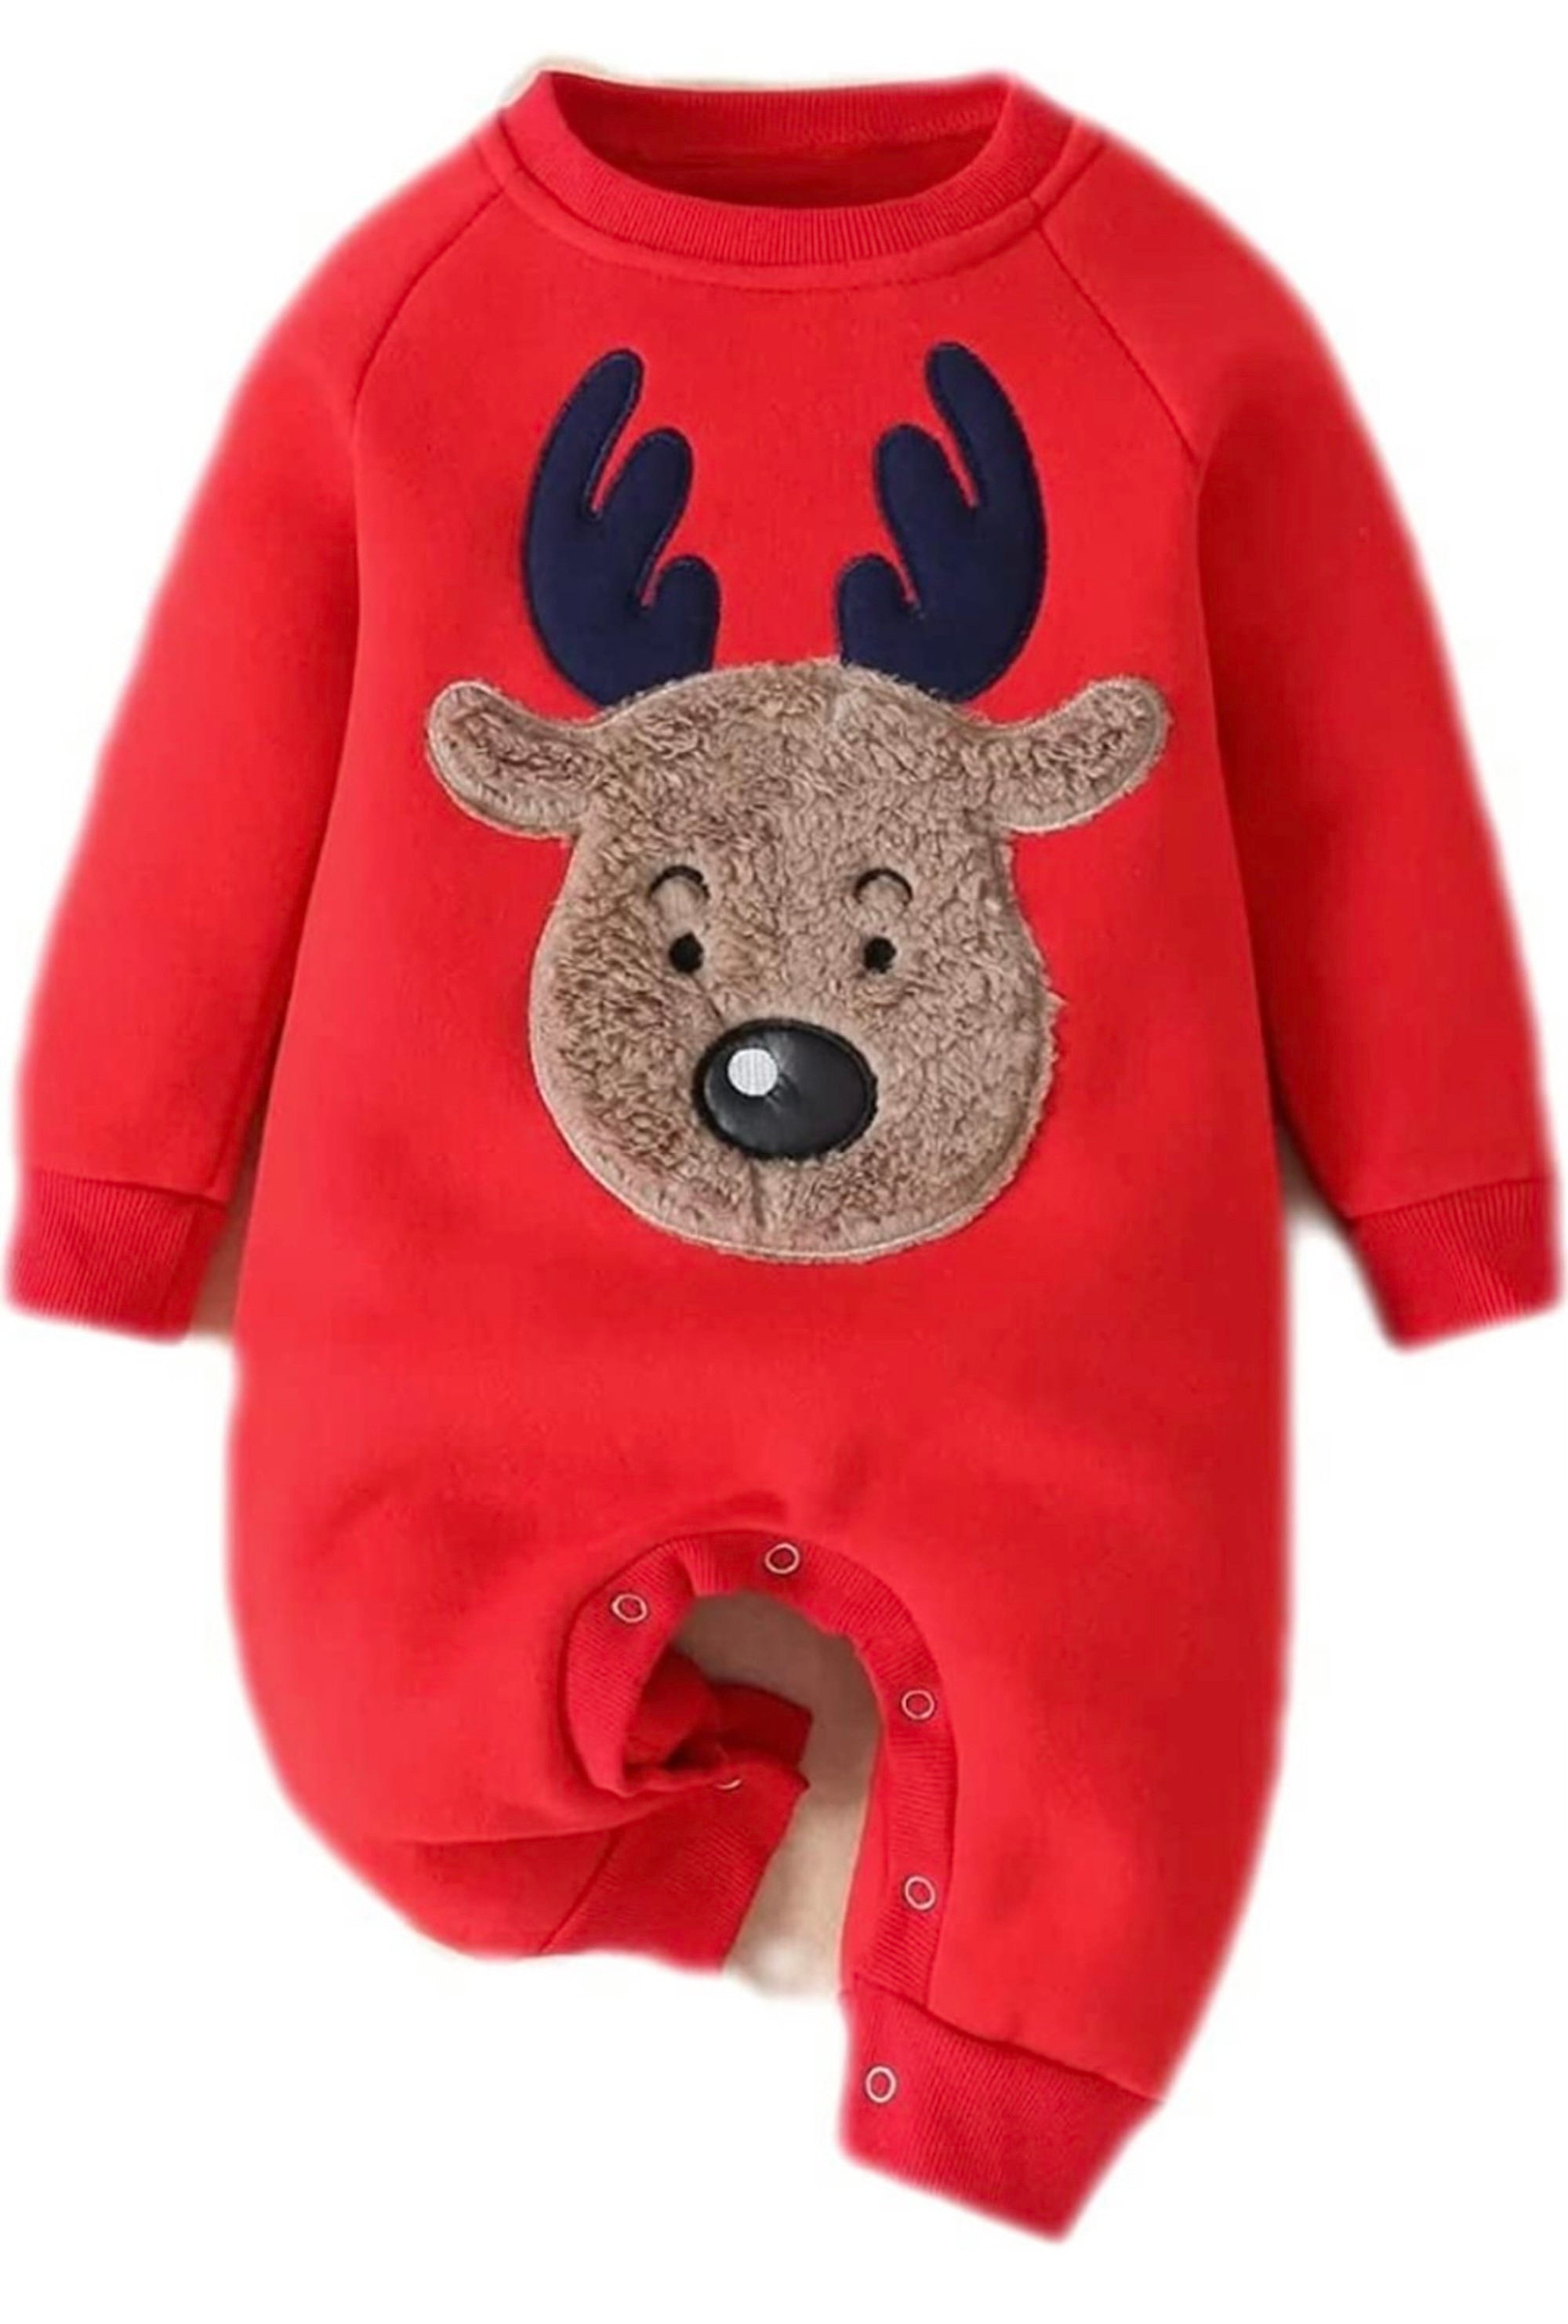 New Baby Infant Reindeer Jumpsuit Romper Baby Suit Handmade Deer Winter ...